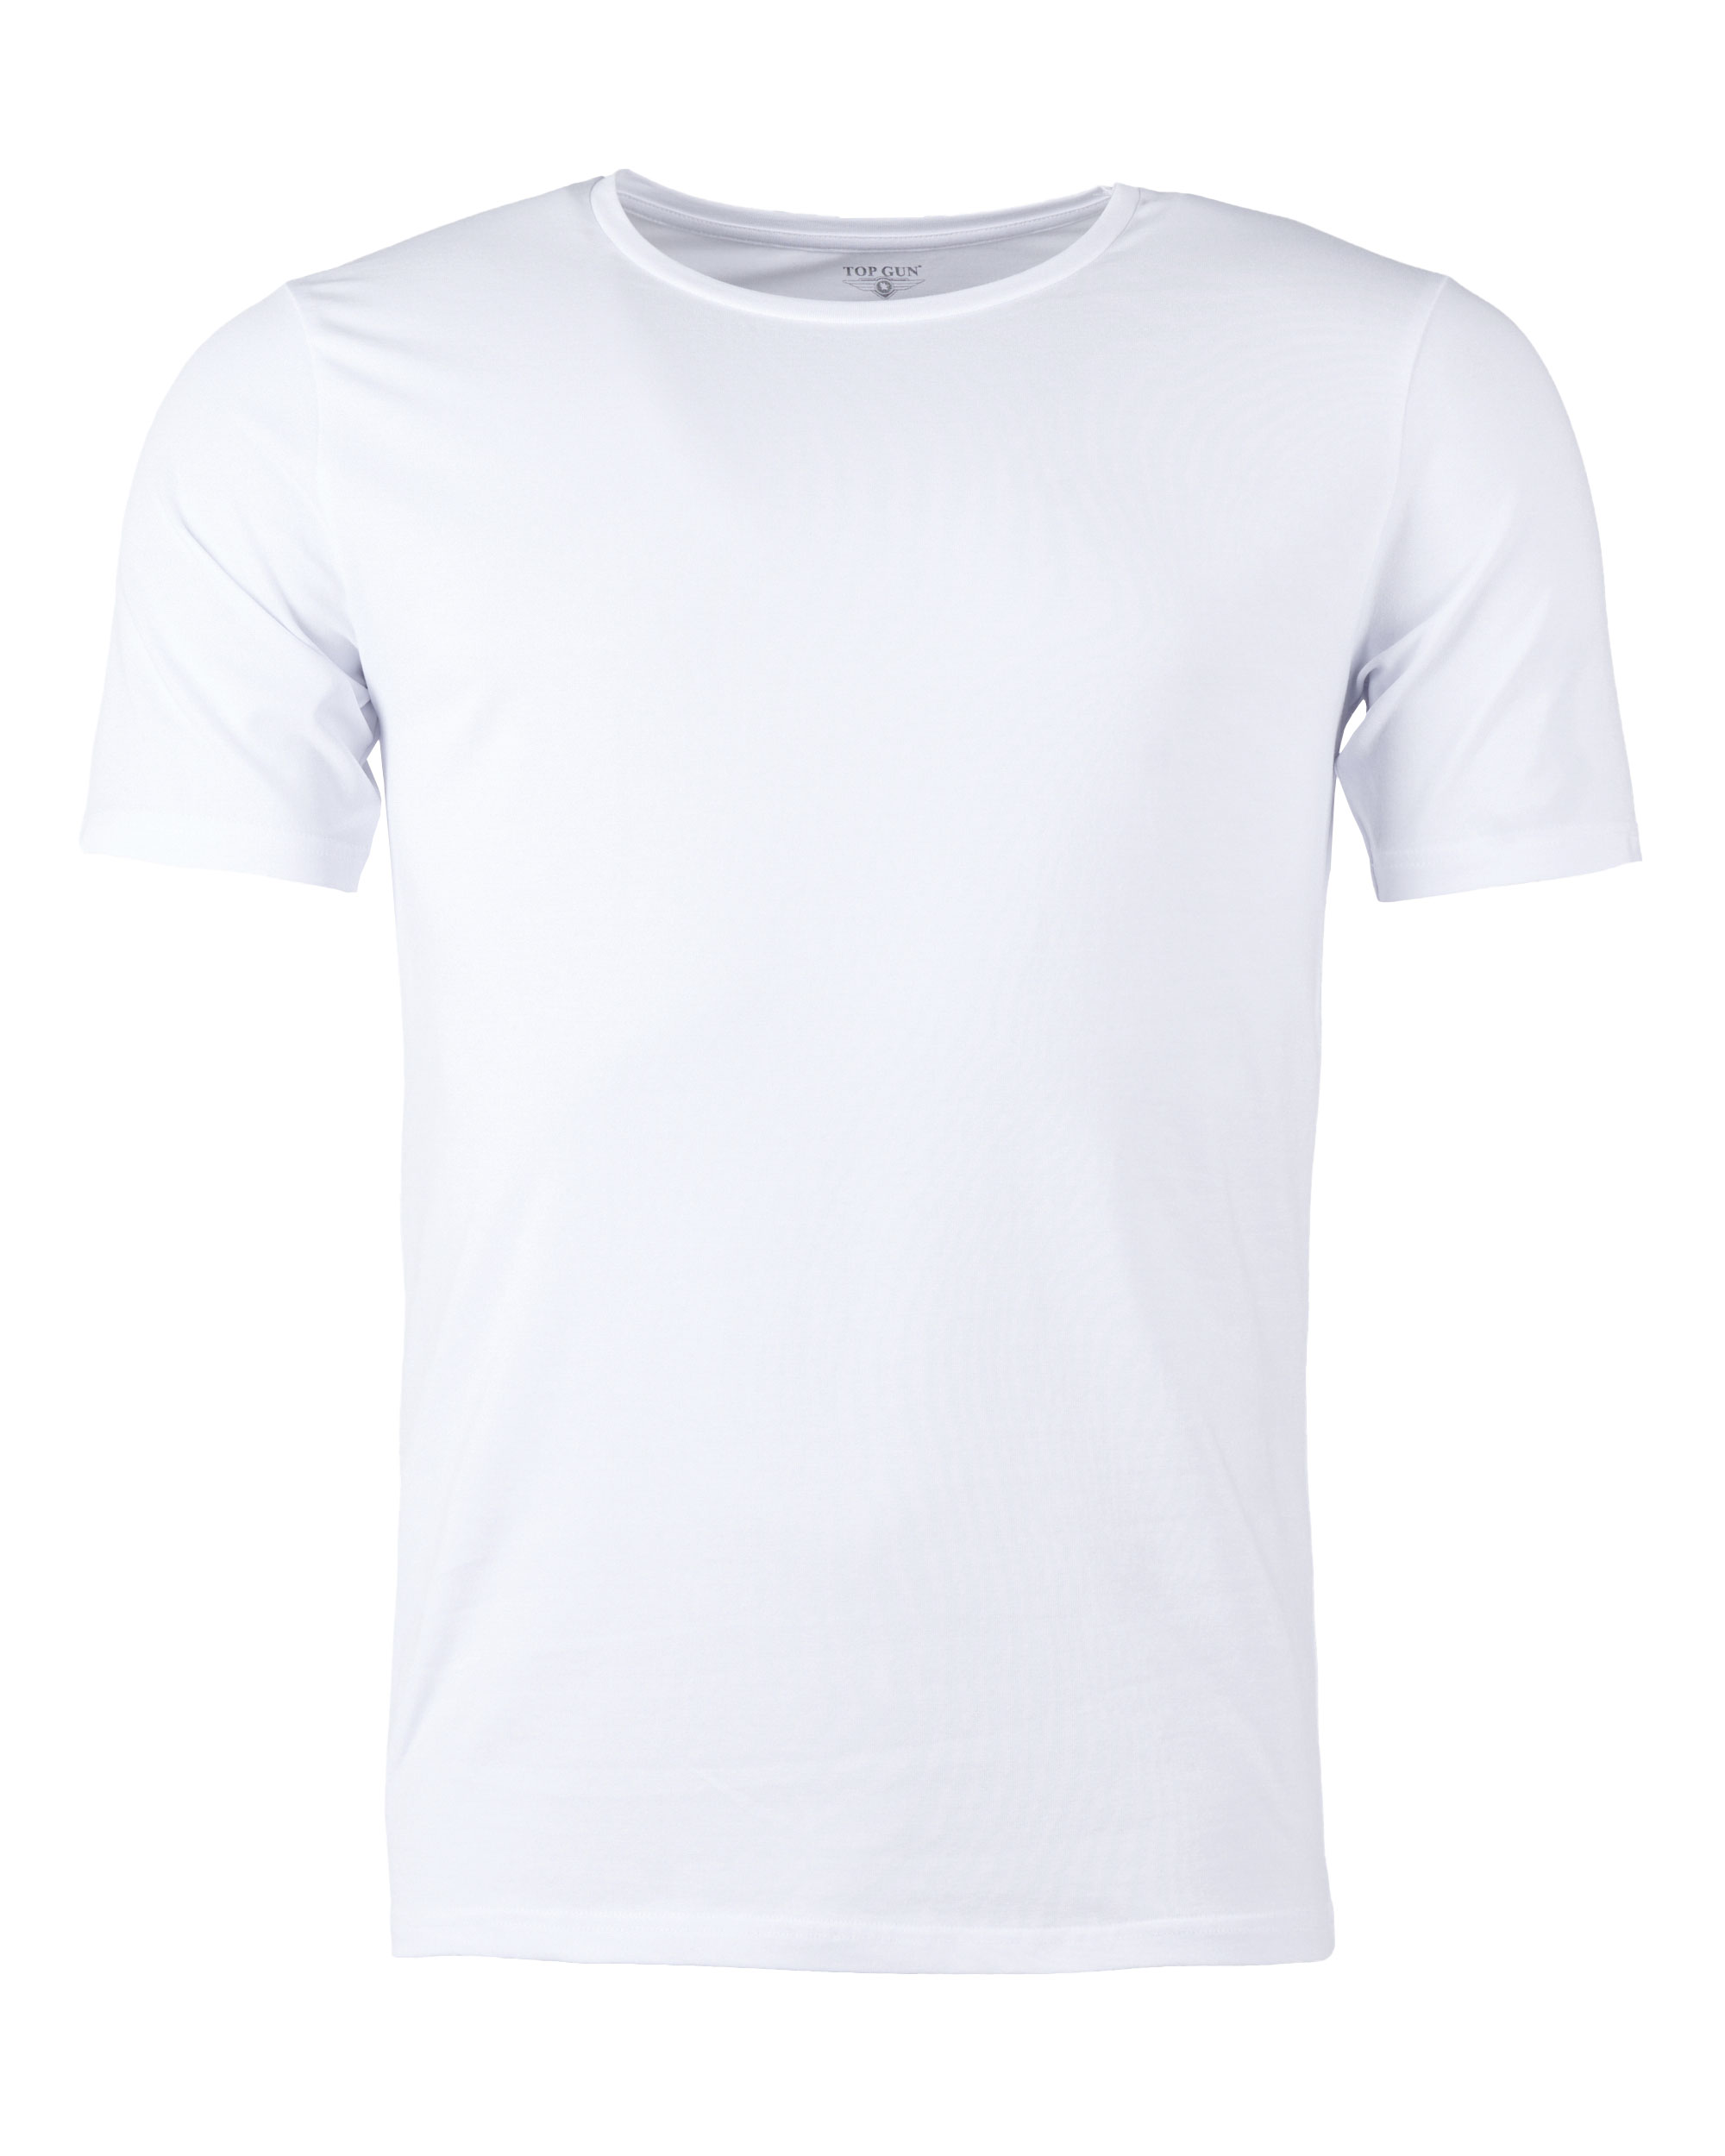 2er Pack T-Shirt Top Gun Slim Fit Weiß XL